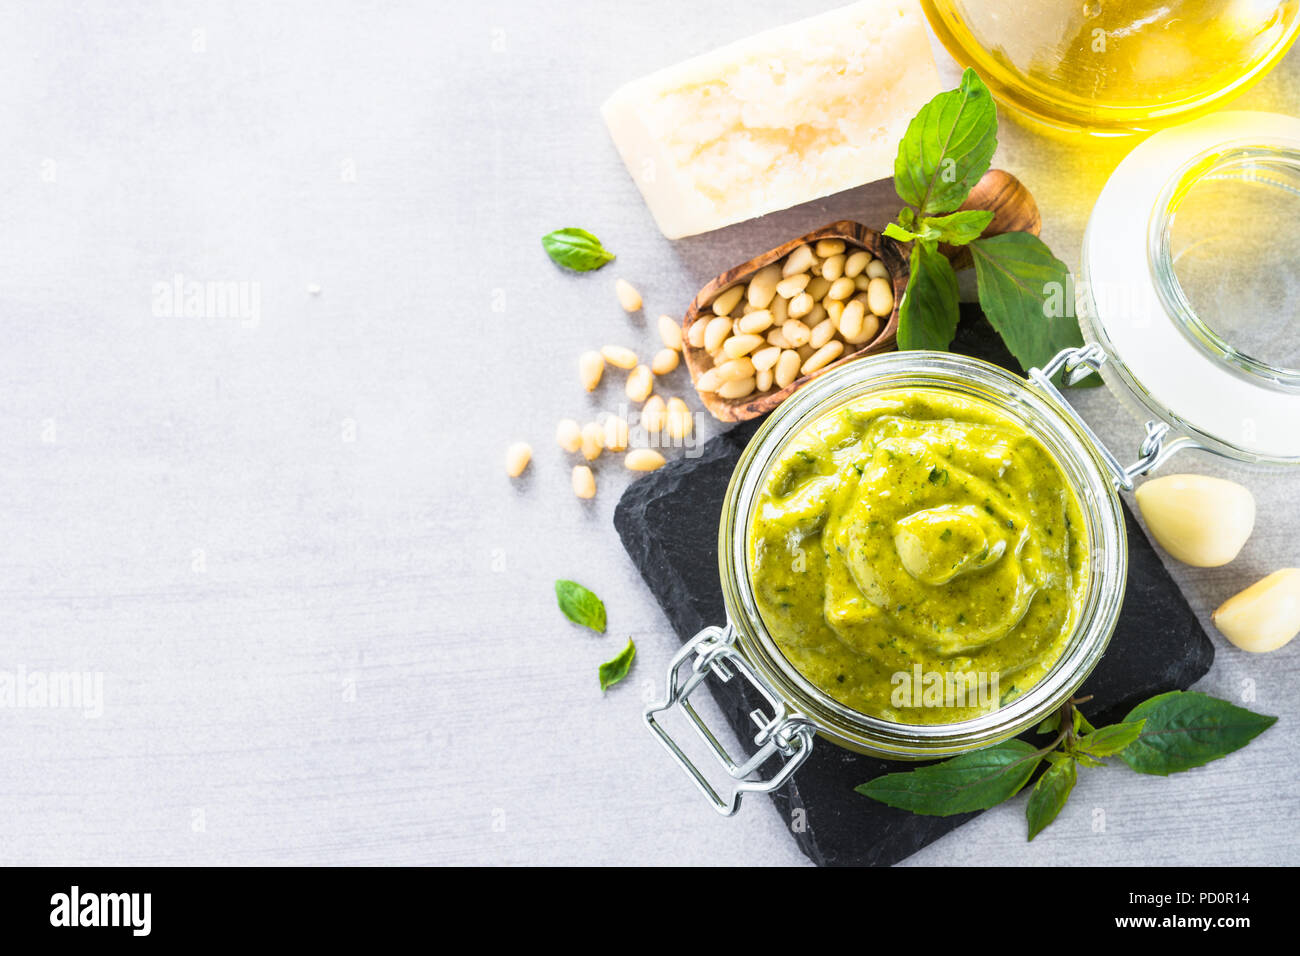 Pesto sauce in glass jar.  Stock Photo